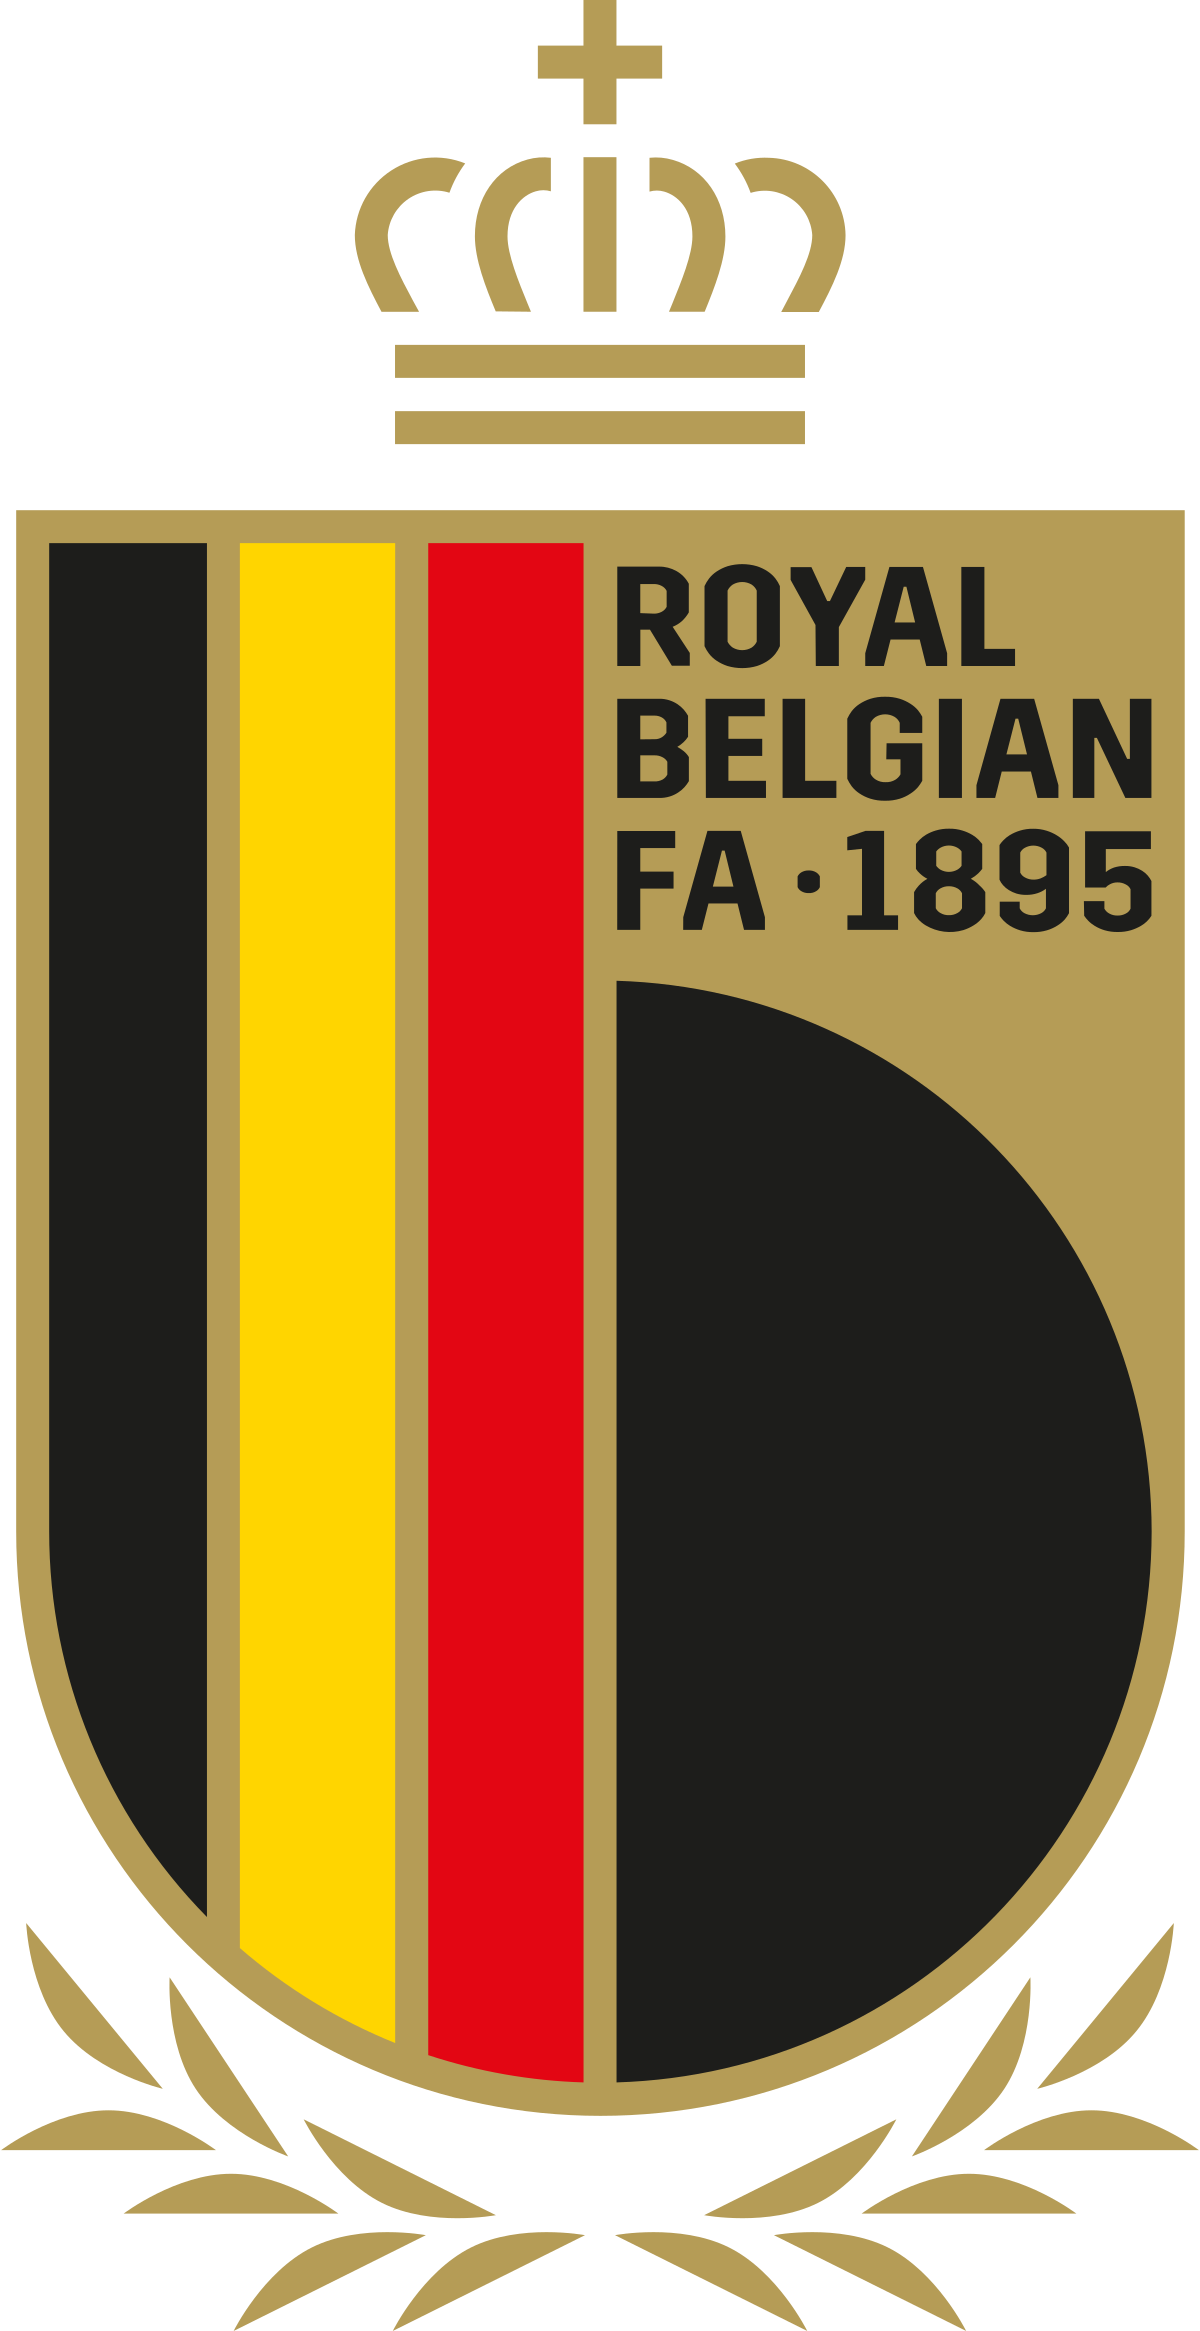 Hiệp hội bóng đá Hoàng gia Bỉ – Wikipedia tiếng Việt